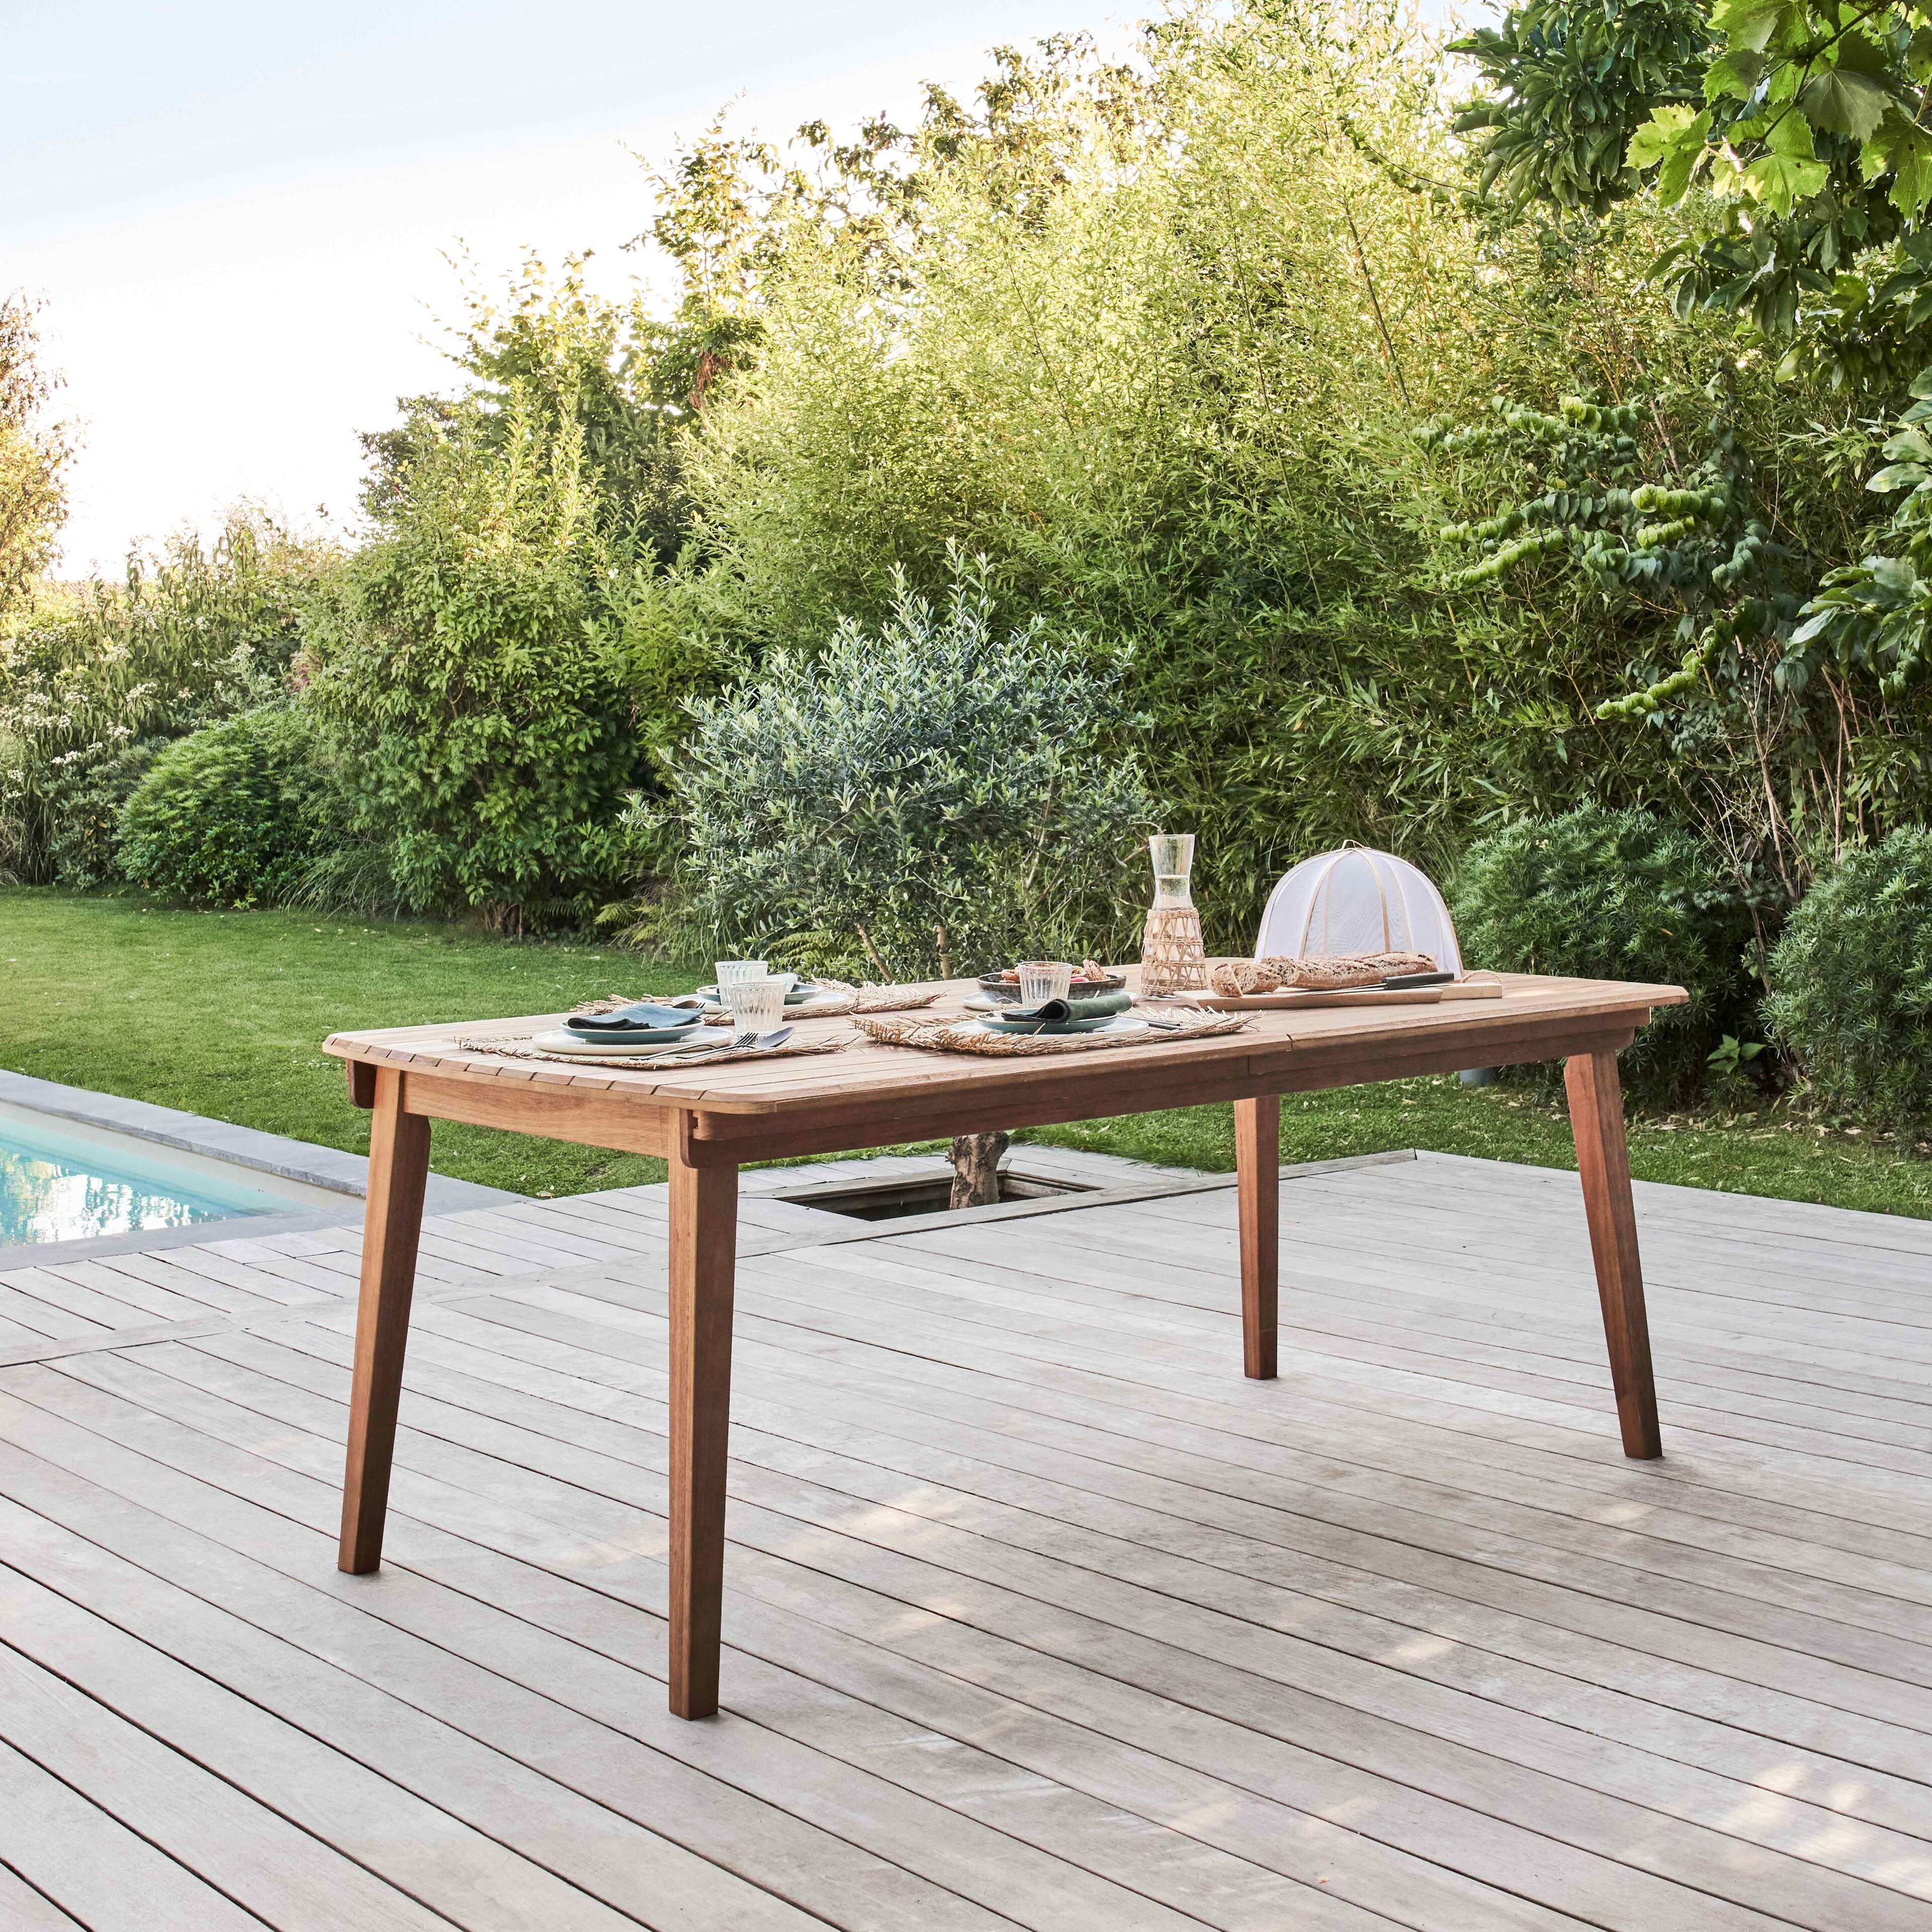 Les 4 idées de tables à manger pour accompagner son mobilier de jardin